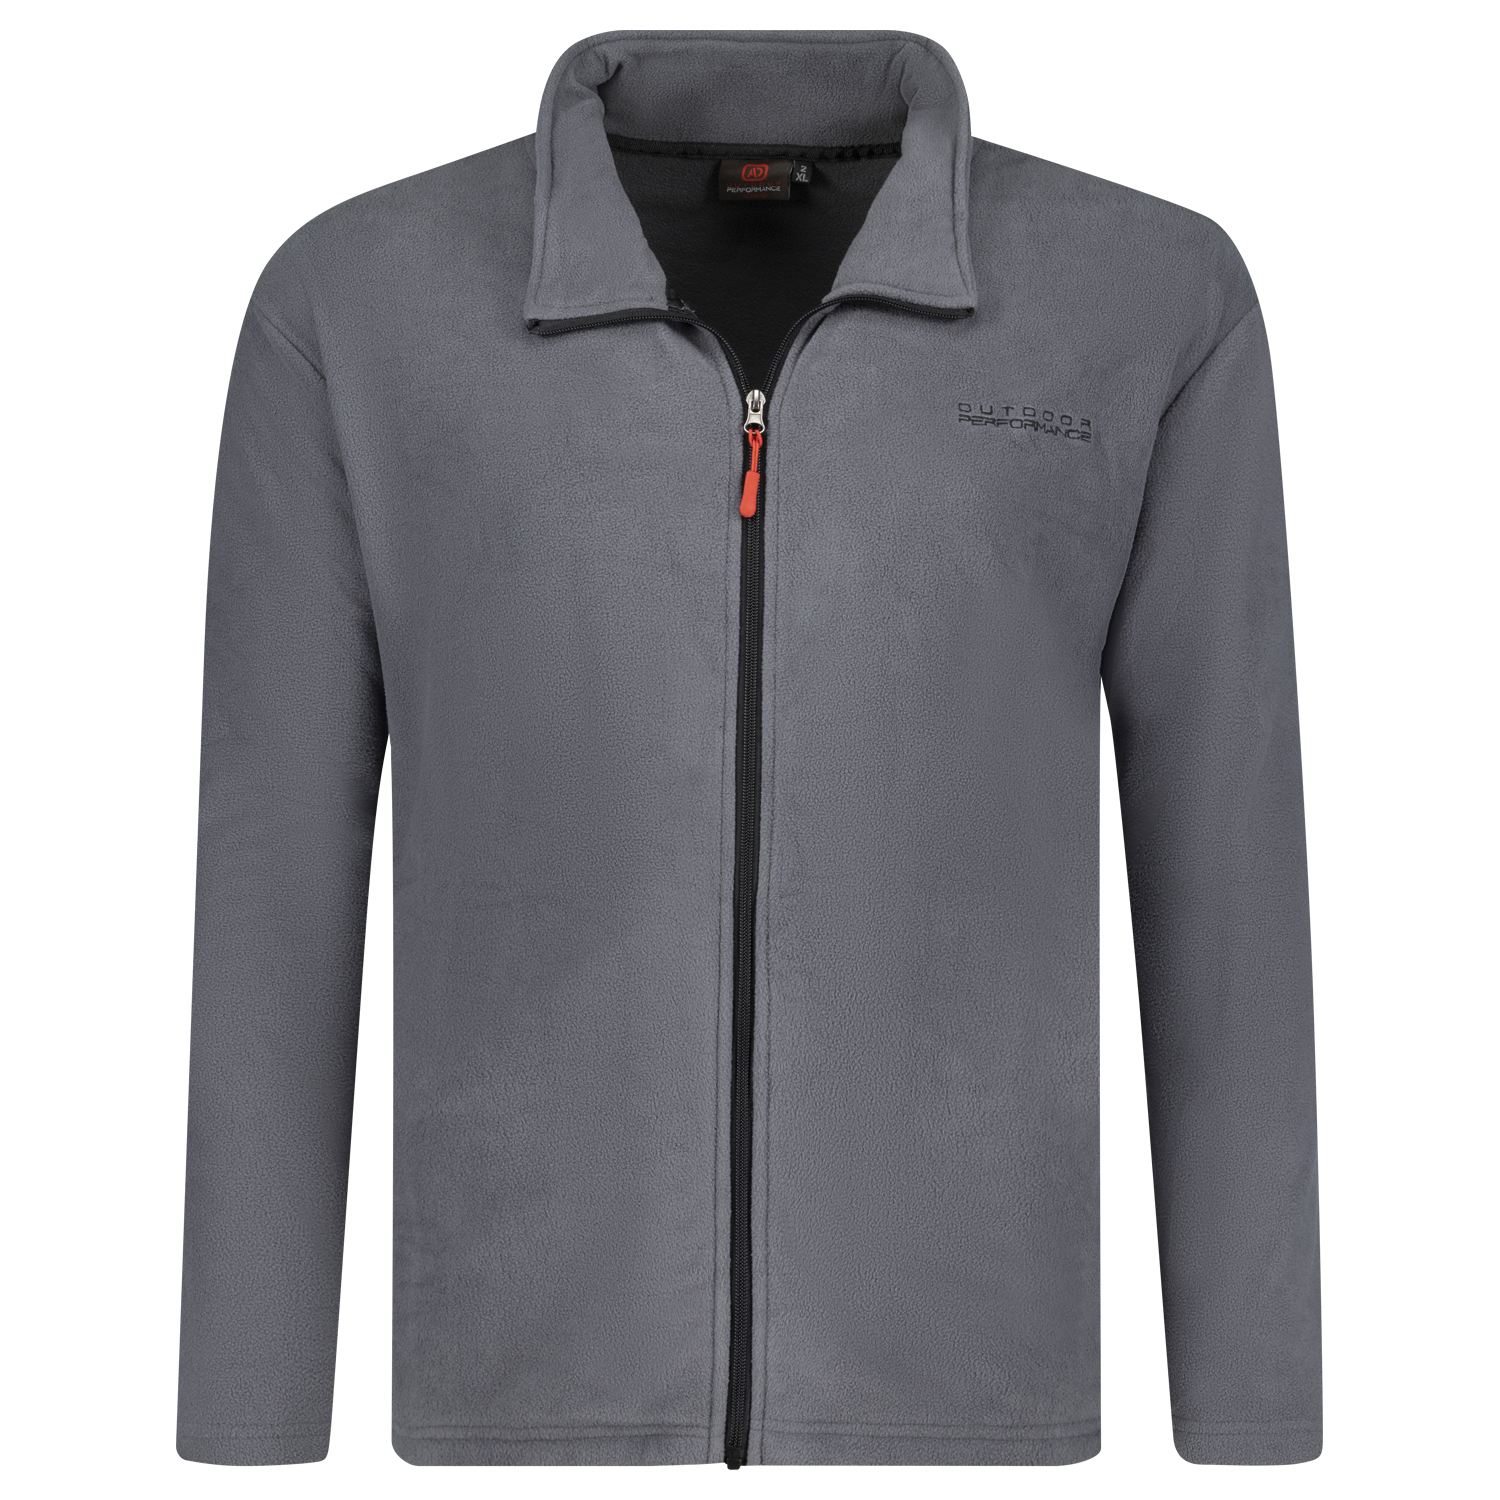 Fleece jacket in grey Series Toronto by Adamo up to oversize 12XL